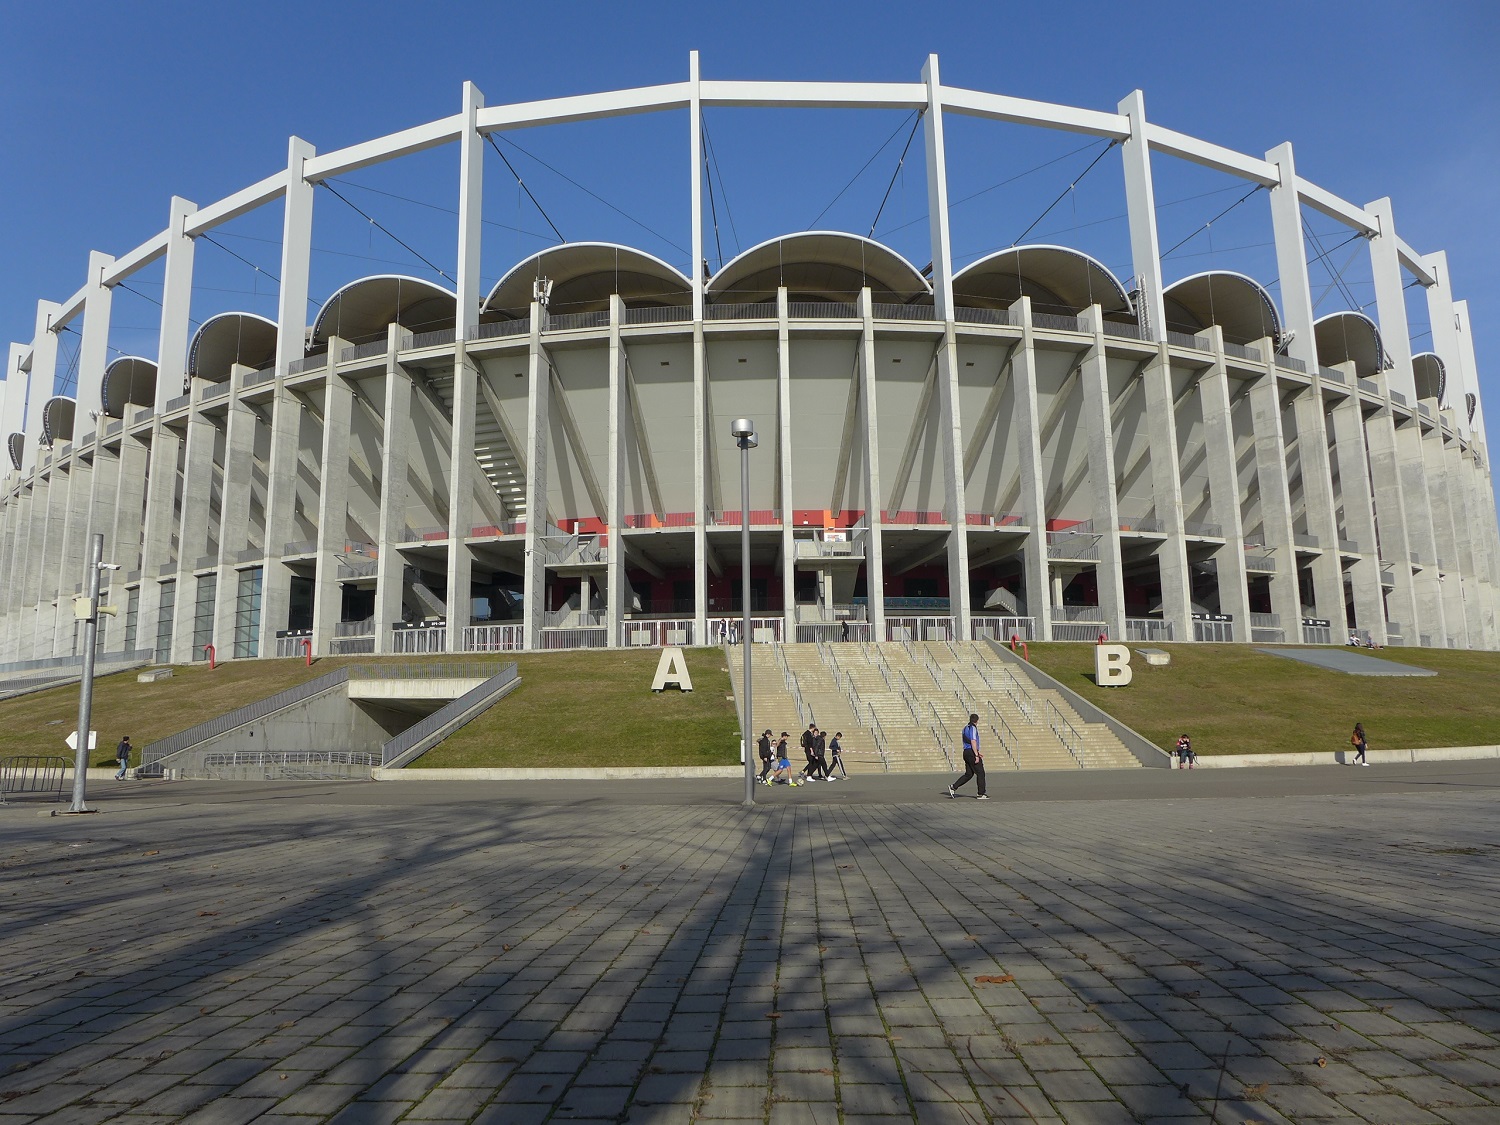 L’Arène nationale compte 55.000 places assises. C’est le plus grand stade omnisports du pays. Il a été inauguré en 2011.